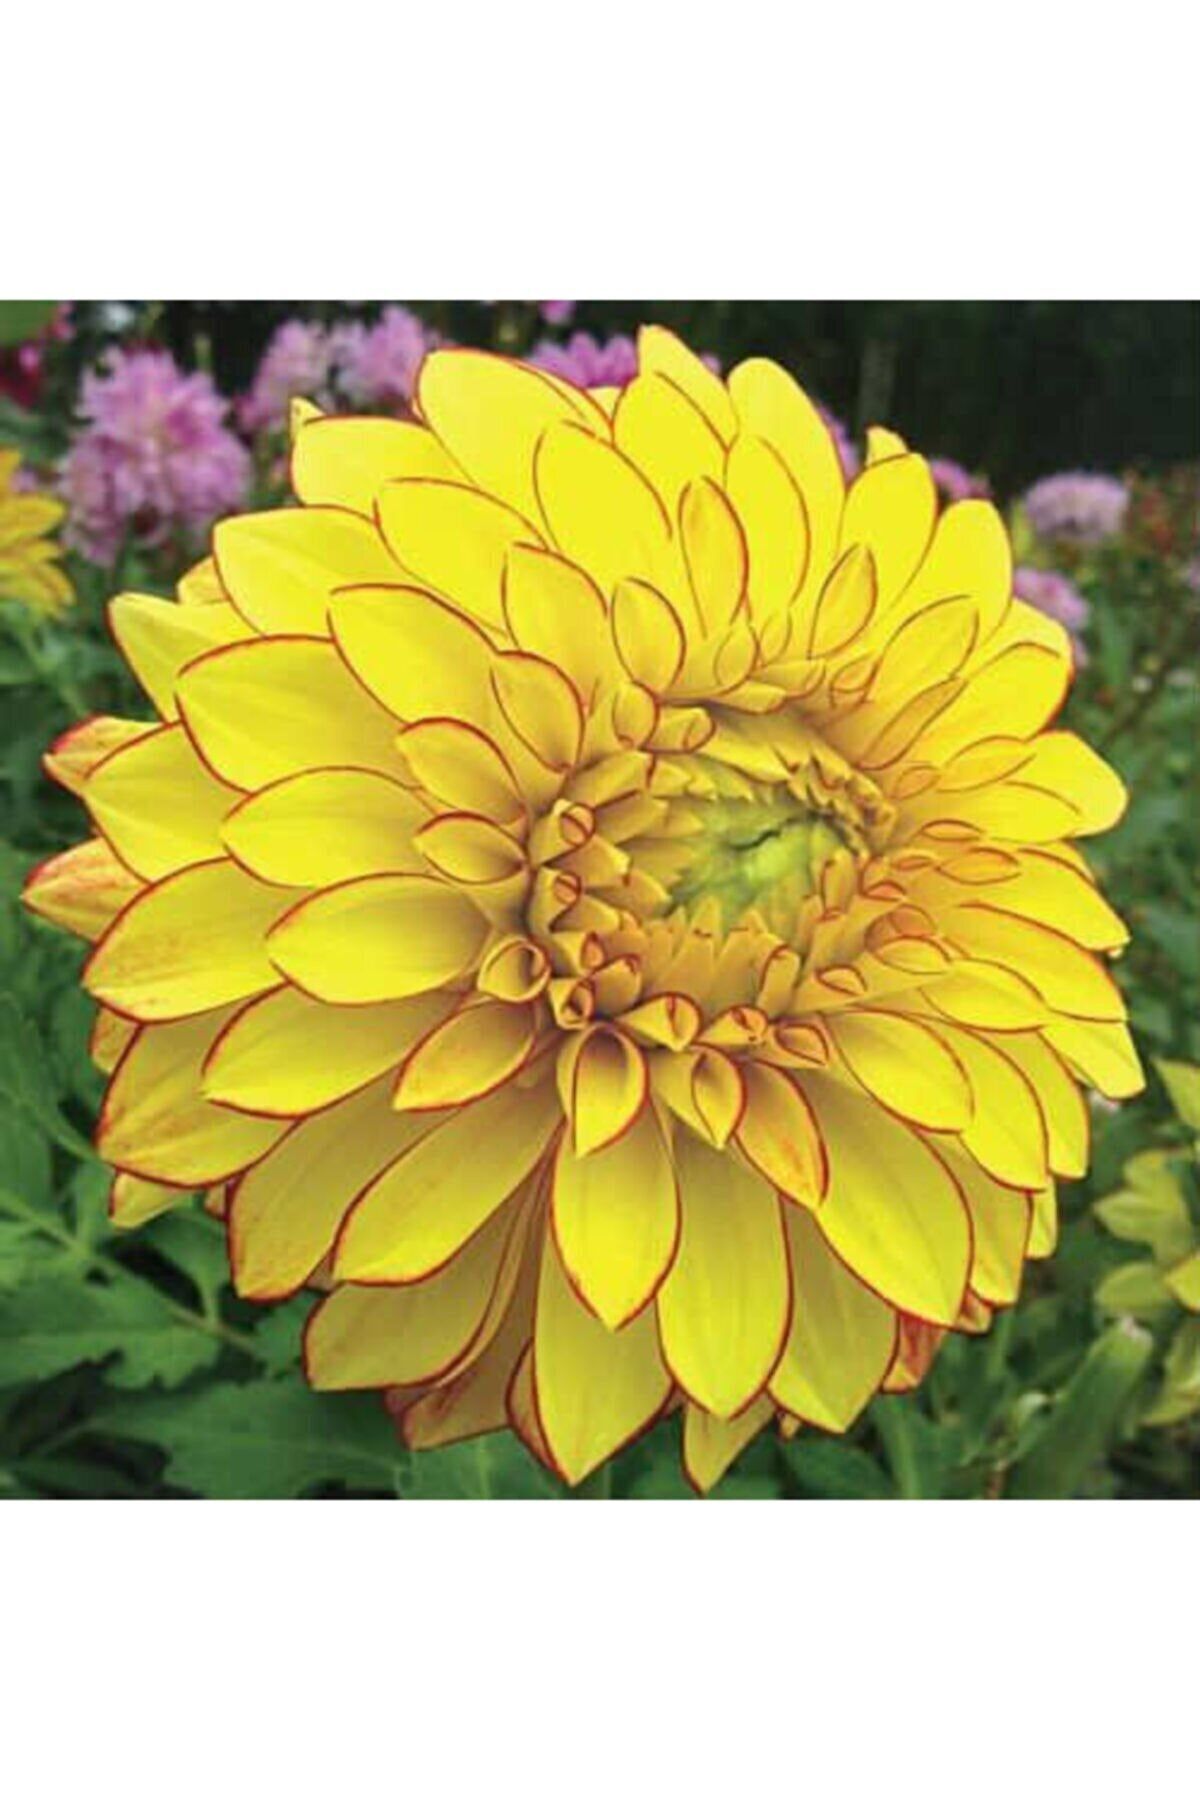 Eslem Tohumculuk Eslem 10 Adet Sarı Renk Dahlia (yıldız Çiçeği) Tohumu + 10 Adet Hediye Karışık Renk Gül Çiçek Tohumu